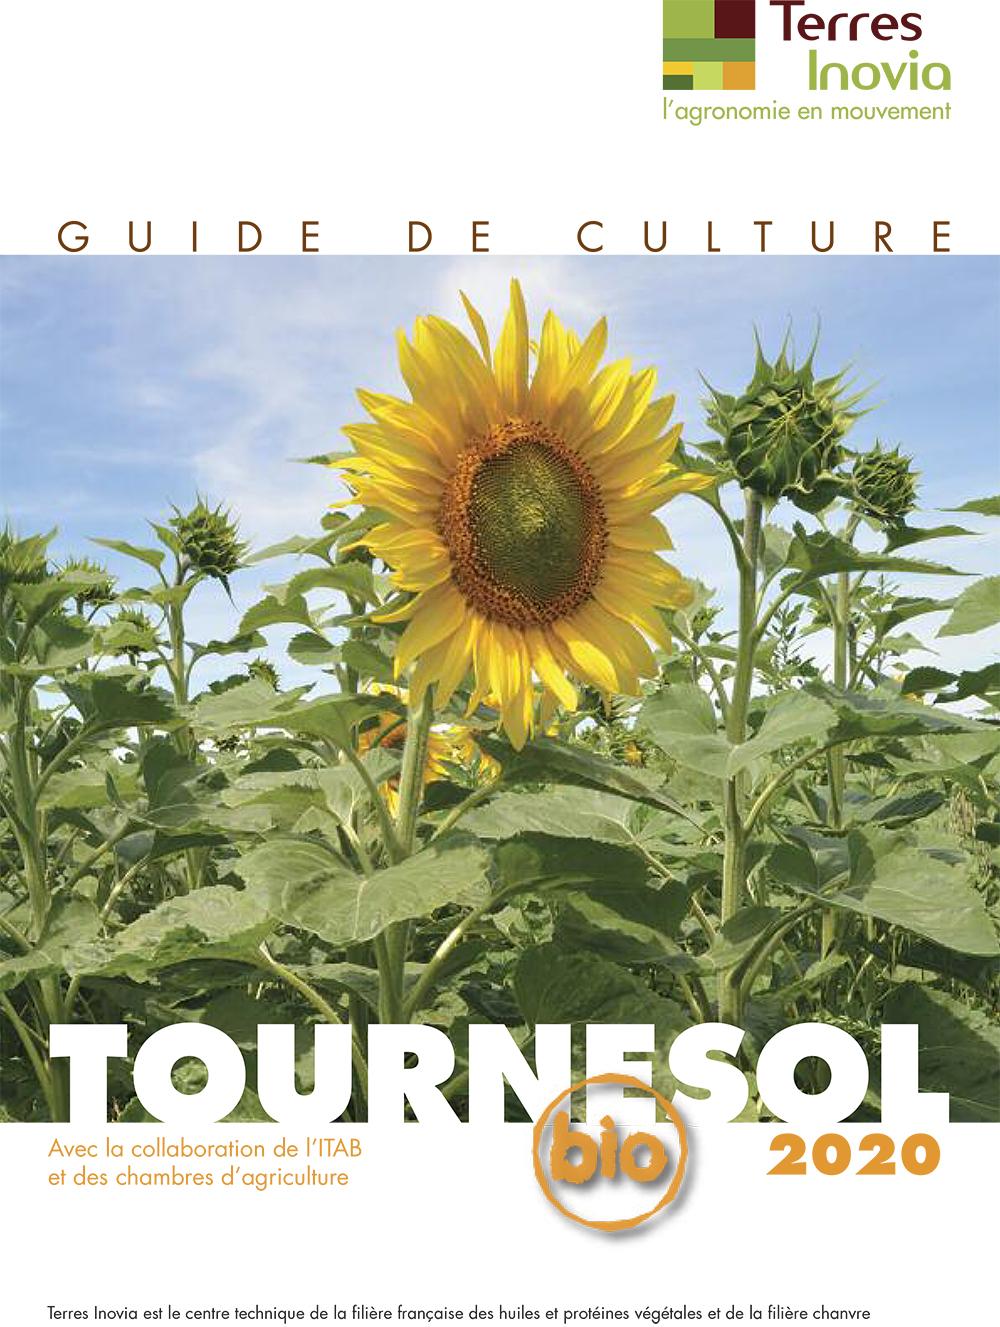 Guide de culture tournesol bio